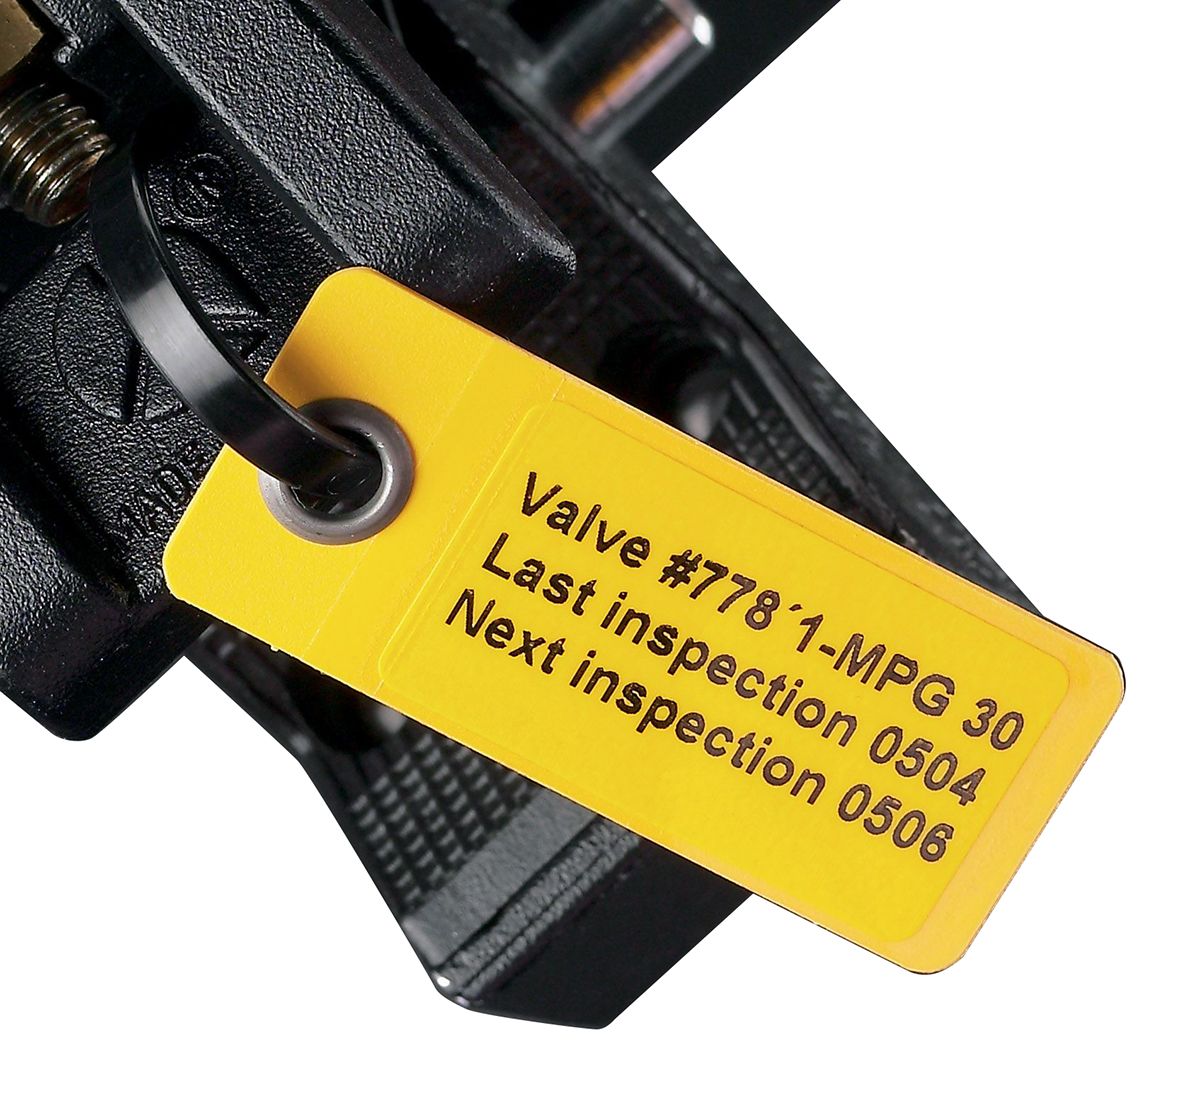 Brady Kabel-Markierer, aufsteckbar, Gelb, 59mm x 25 mm, 50 Stück